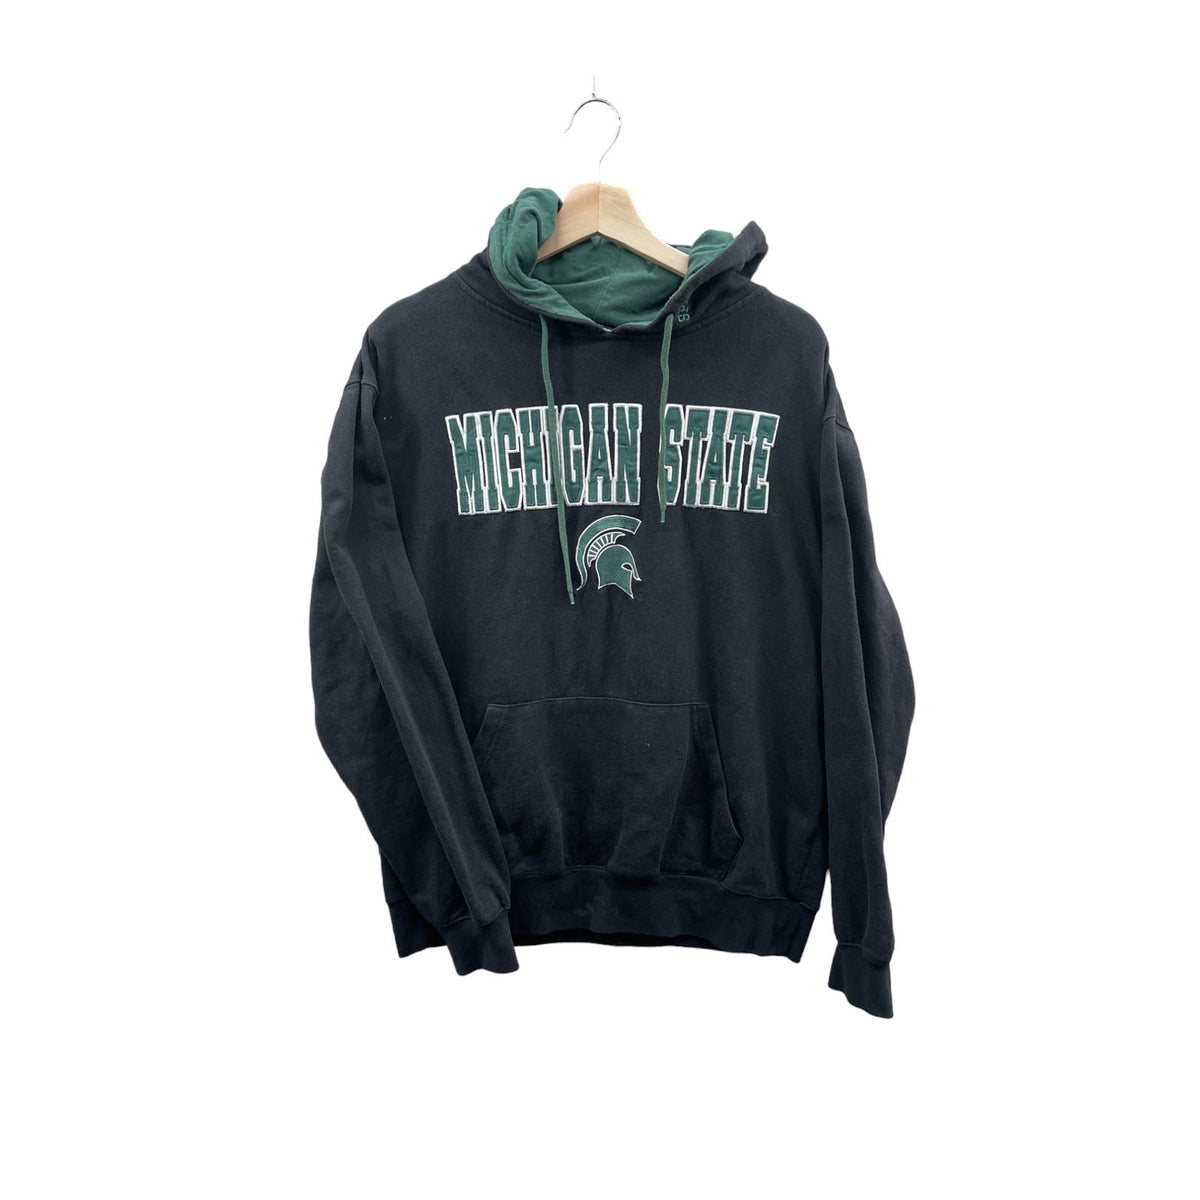 Vintage 2000's Michigan State University Collegiate Hoodie